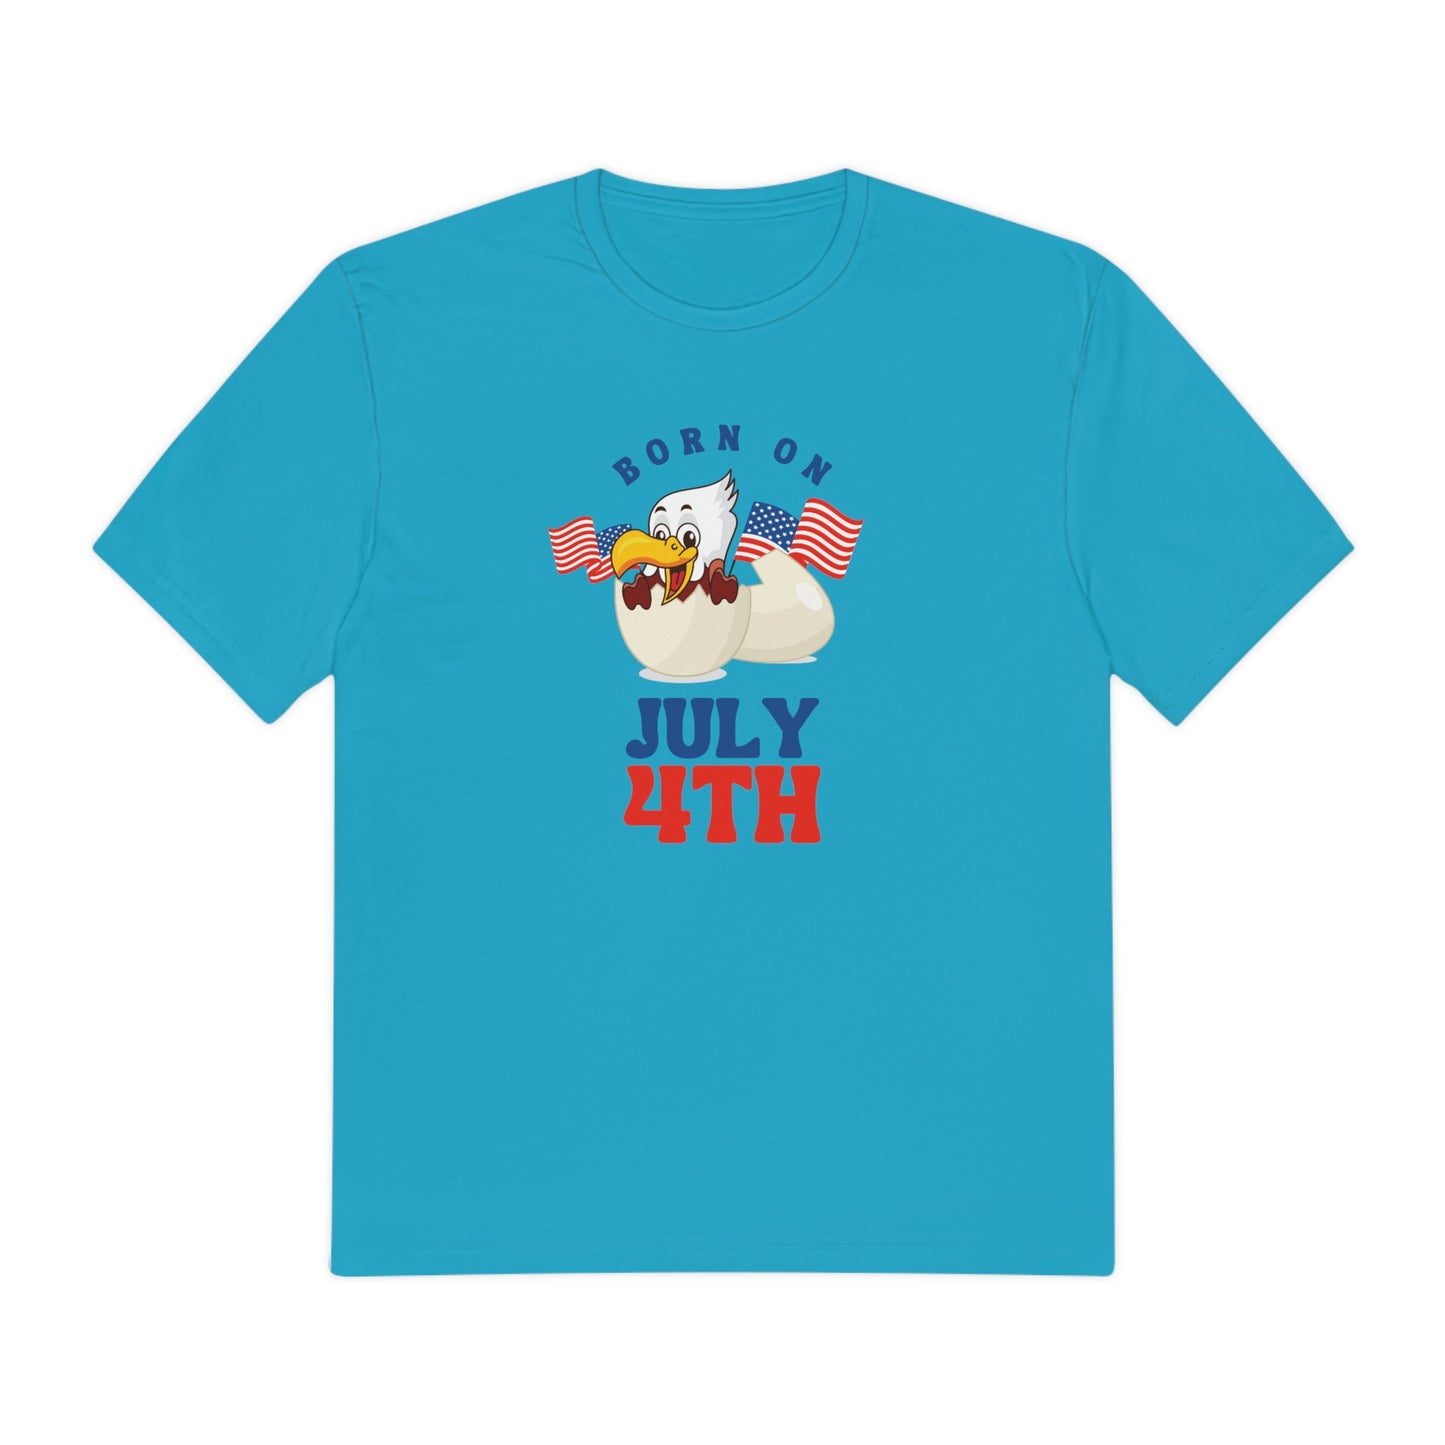 Born on 4th of July, USA Flag Shirt, 4th of July Shirt, Big USA T-shirt, USA Comfort Colors Shirt, Comfort Colors USA Flag Tee, USA Comfort Colors Tee, USA Shirt